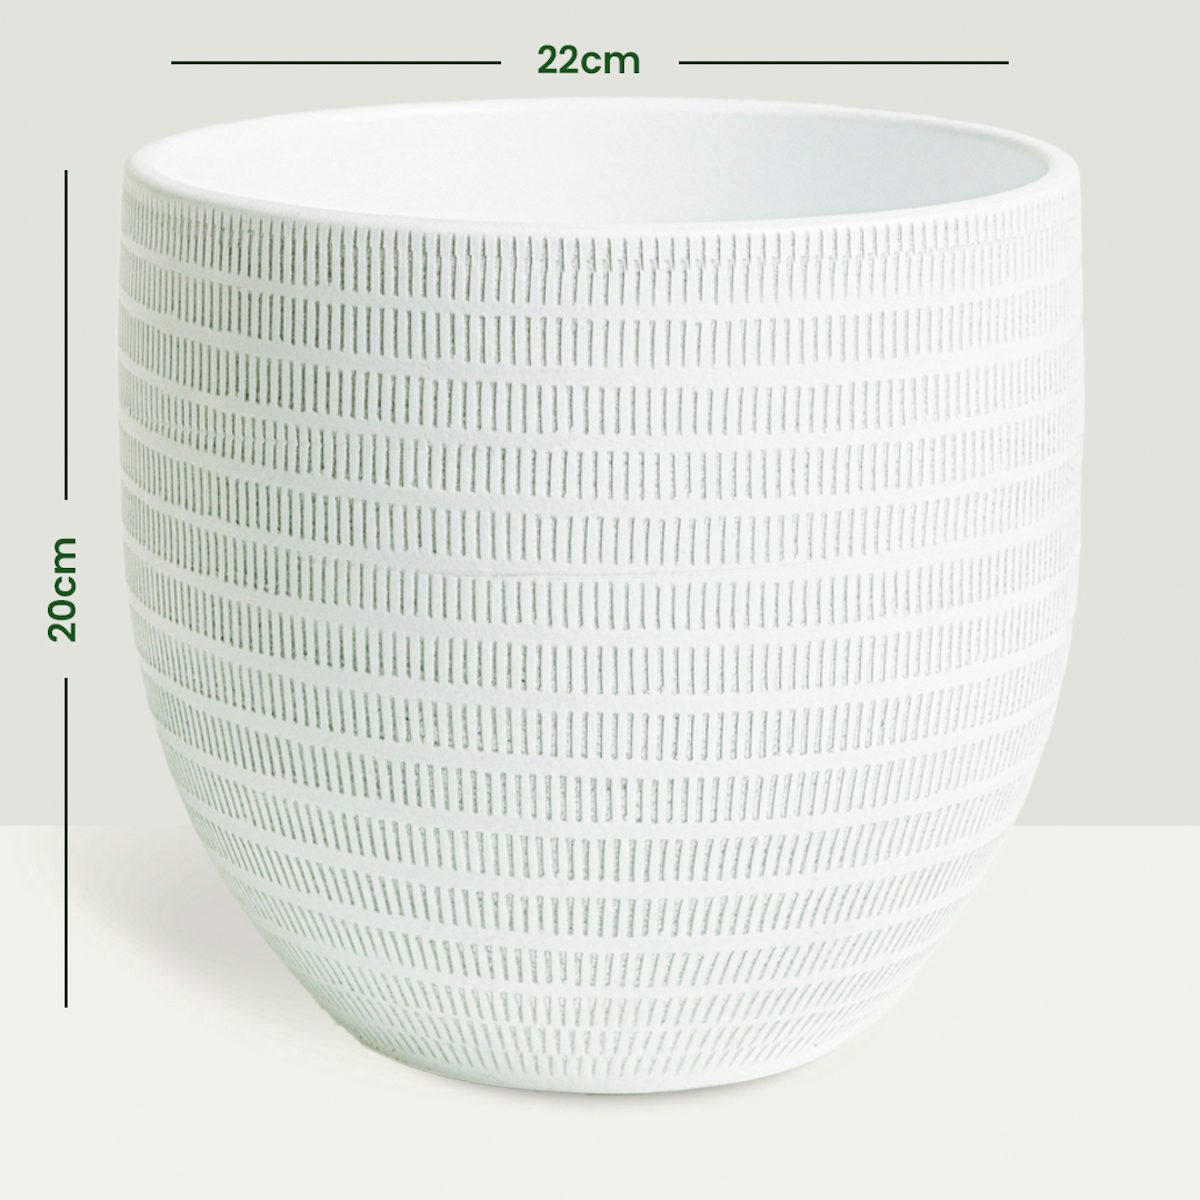 Oslo pot - XL/23cm